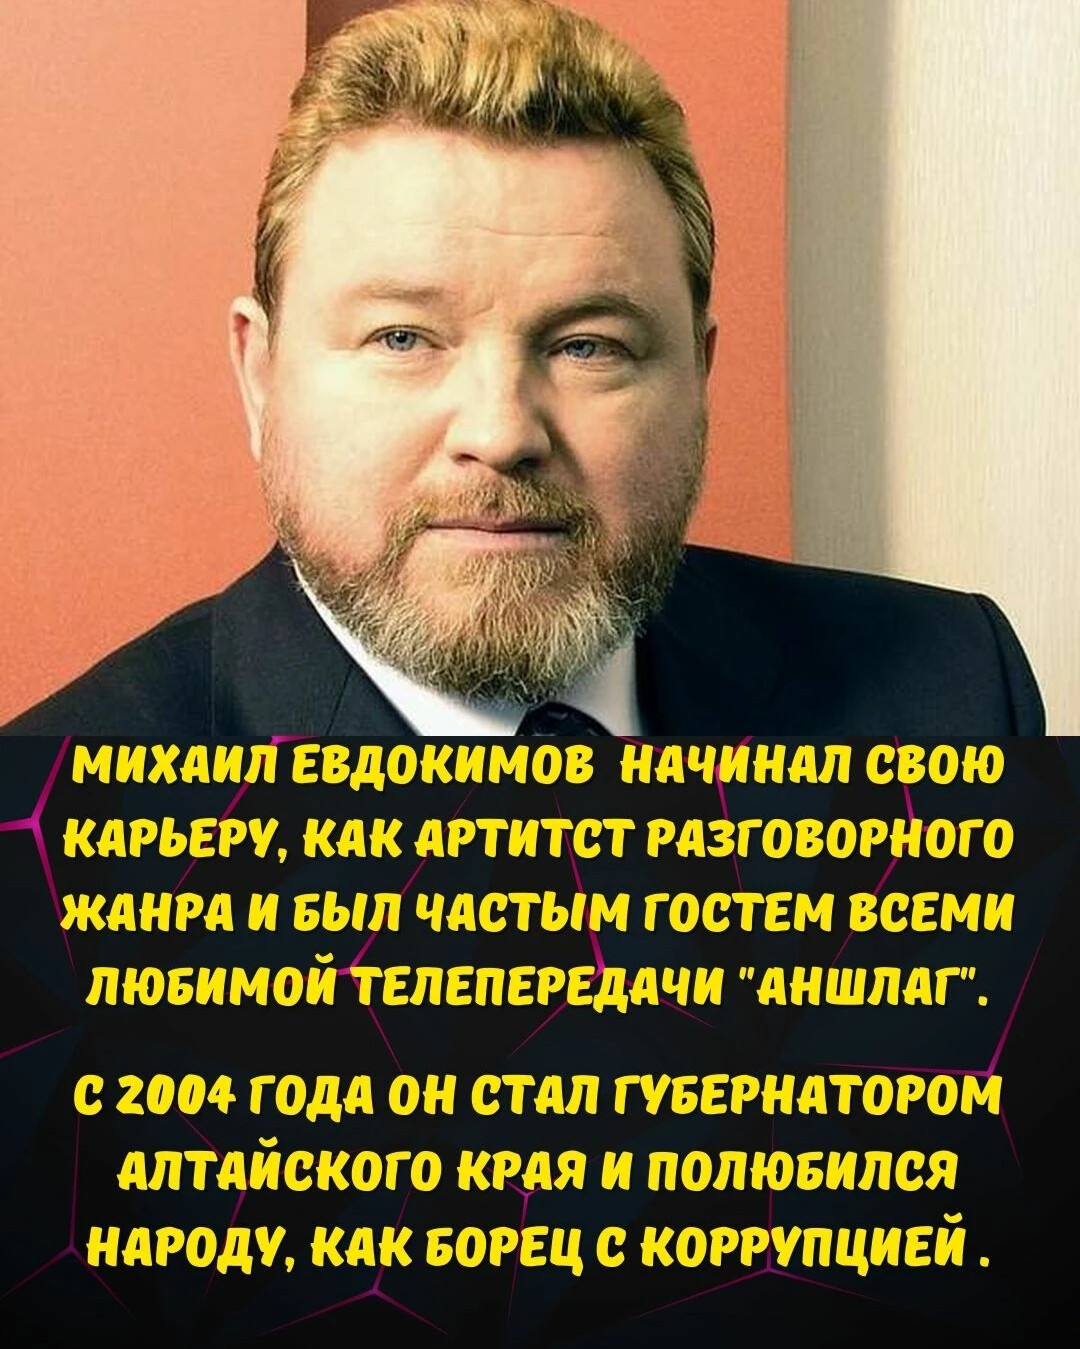 Евдокимов губернатор алтайского края. Евдокимов юморист.